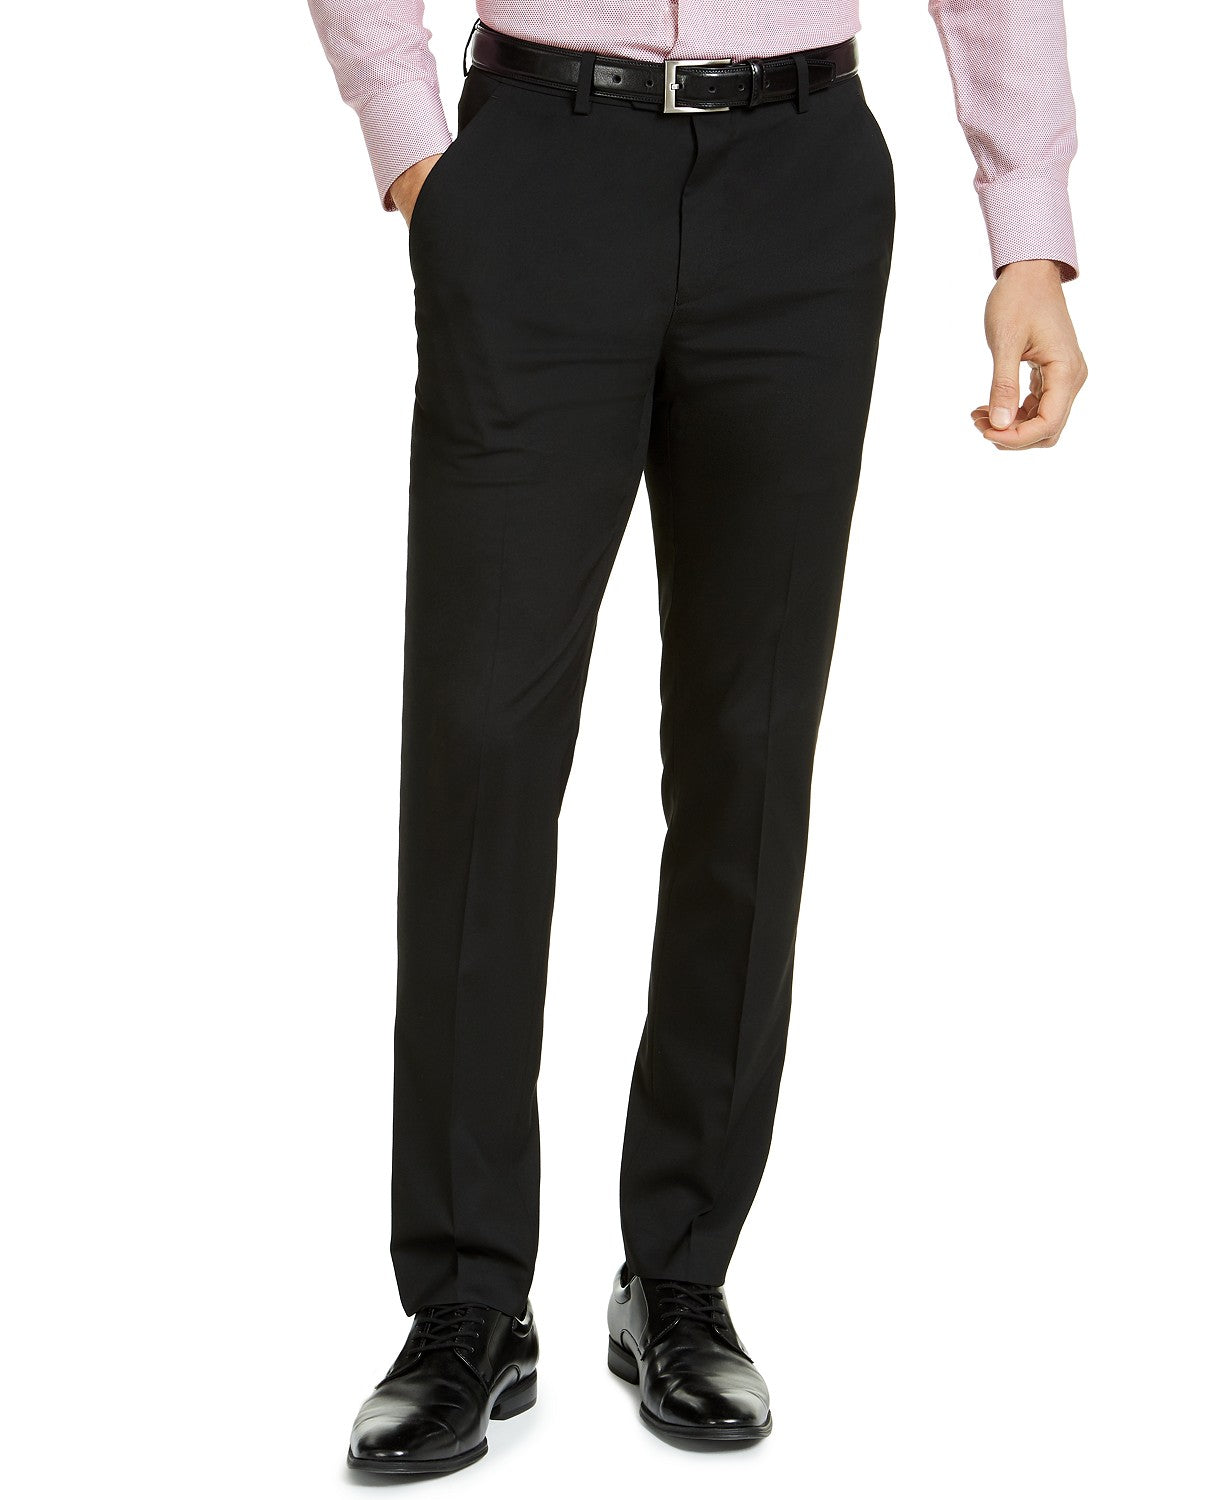 Alfani Men's 2 Piece Suit Black 36R / 30 x 30 Slim Fit Stretch Solid